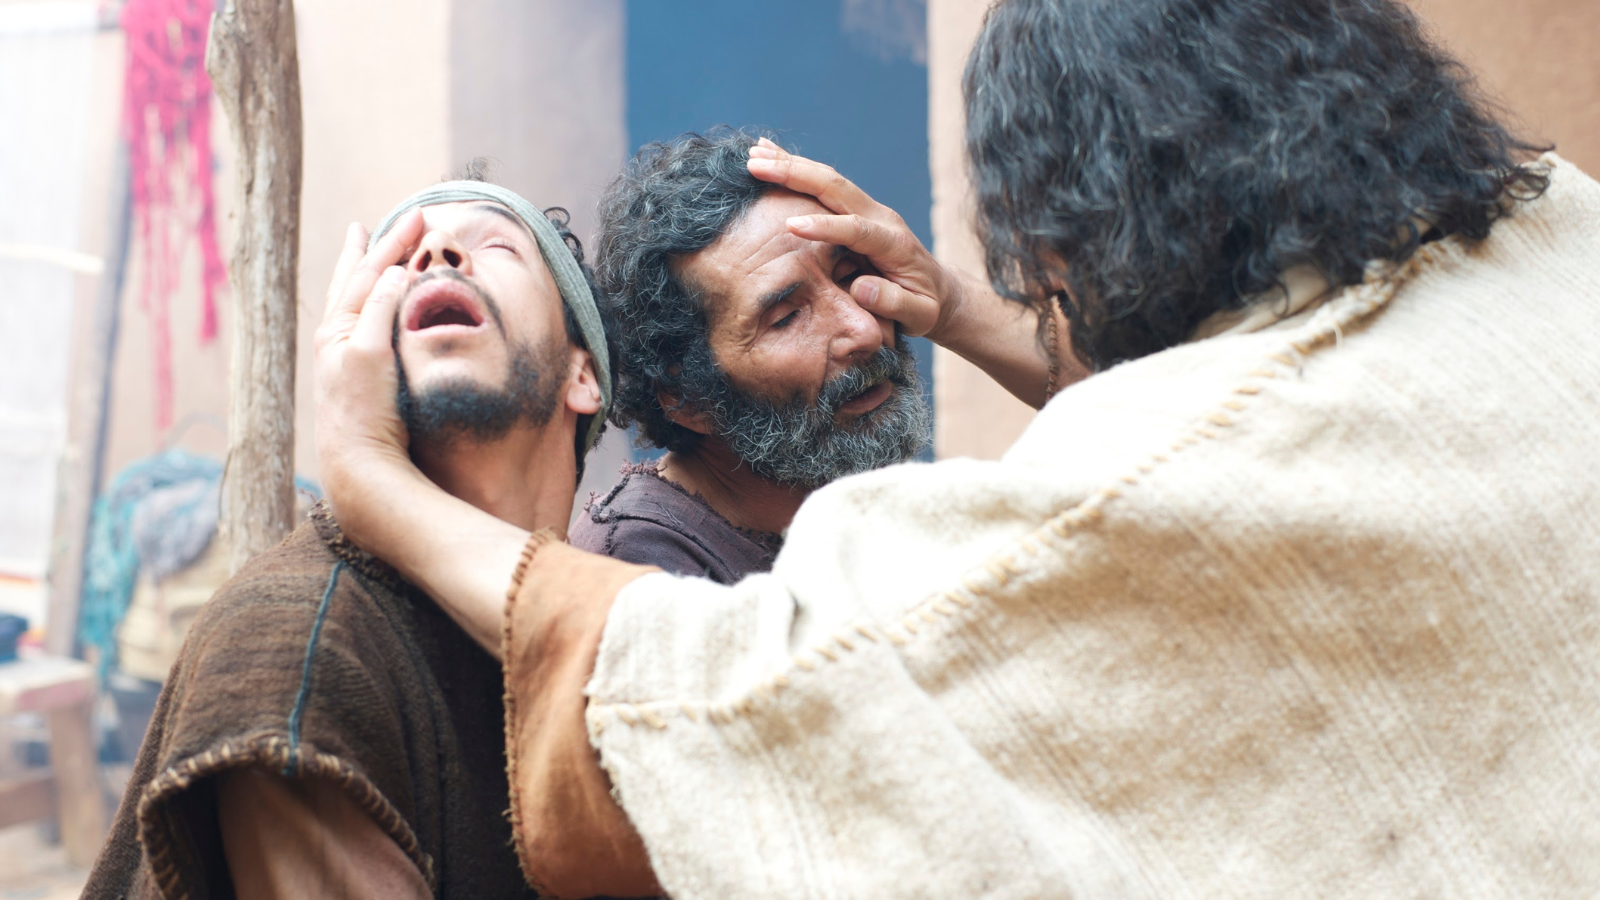 Jesus healing two men.